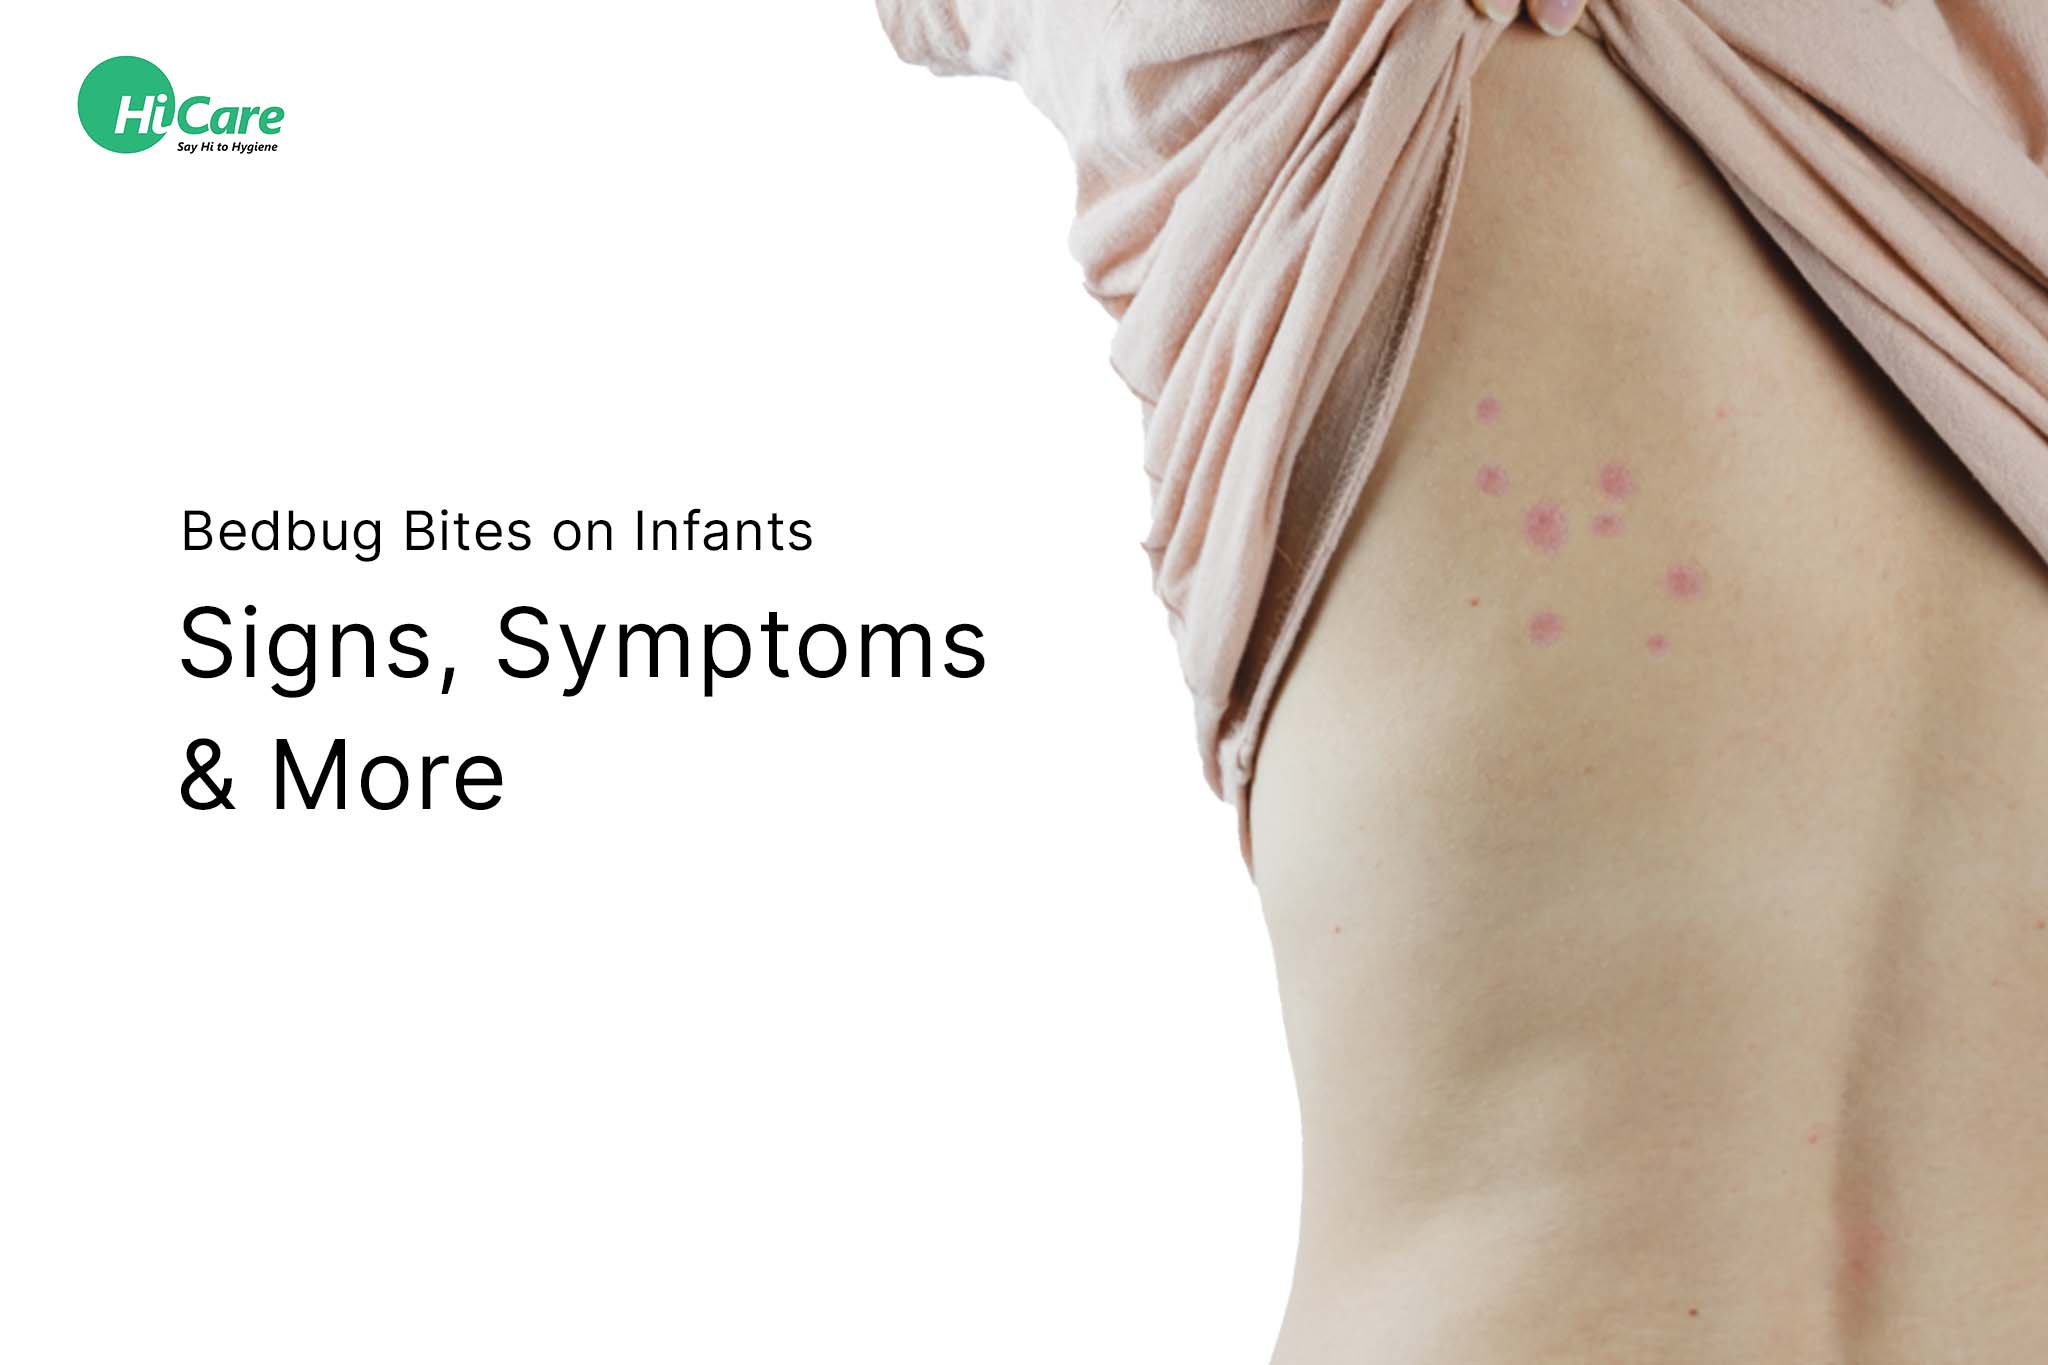 Bedbug Bites on Infants: Signs, Symptoms & More